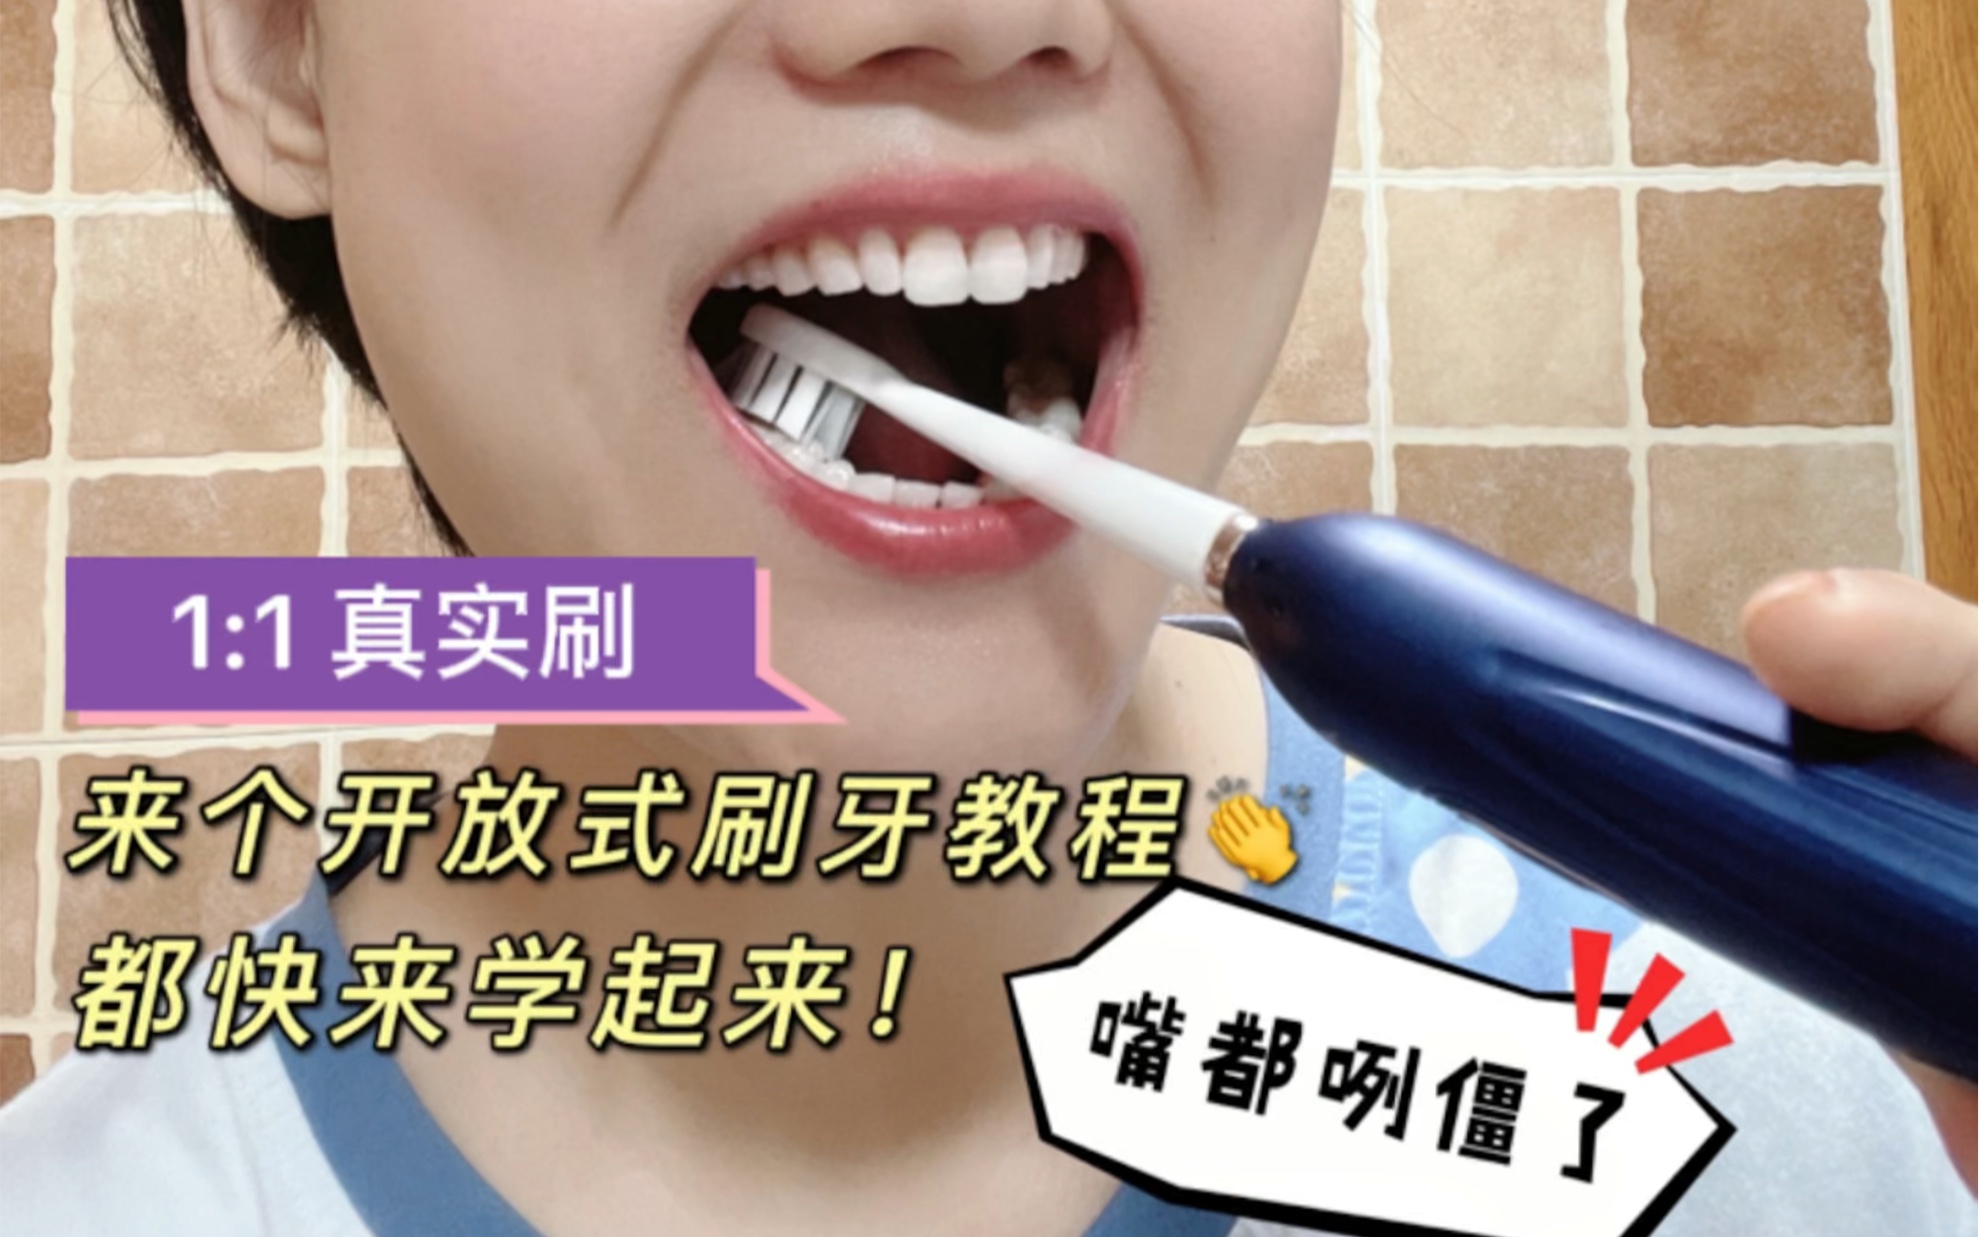 【刷博士】不同年龄阶段的宝宝刷牙方法及牙刷选择 - 哔哩哔哩